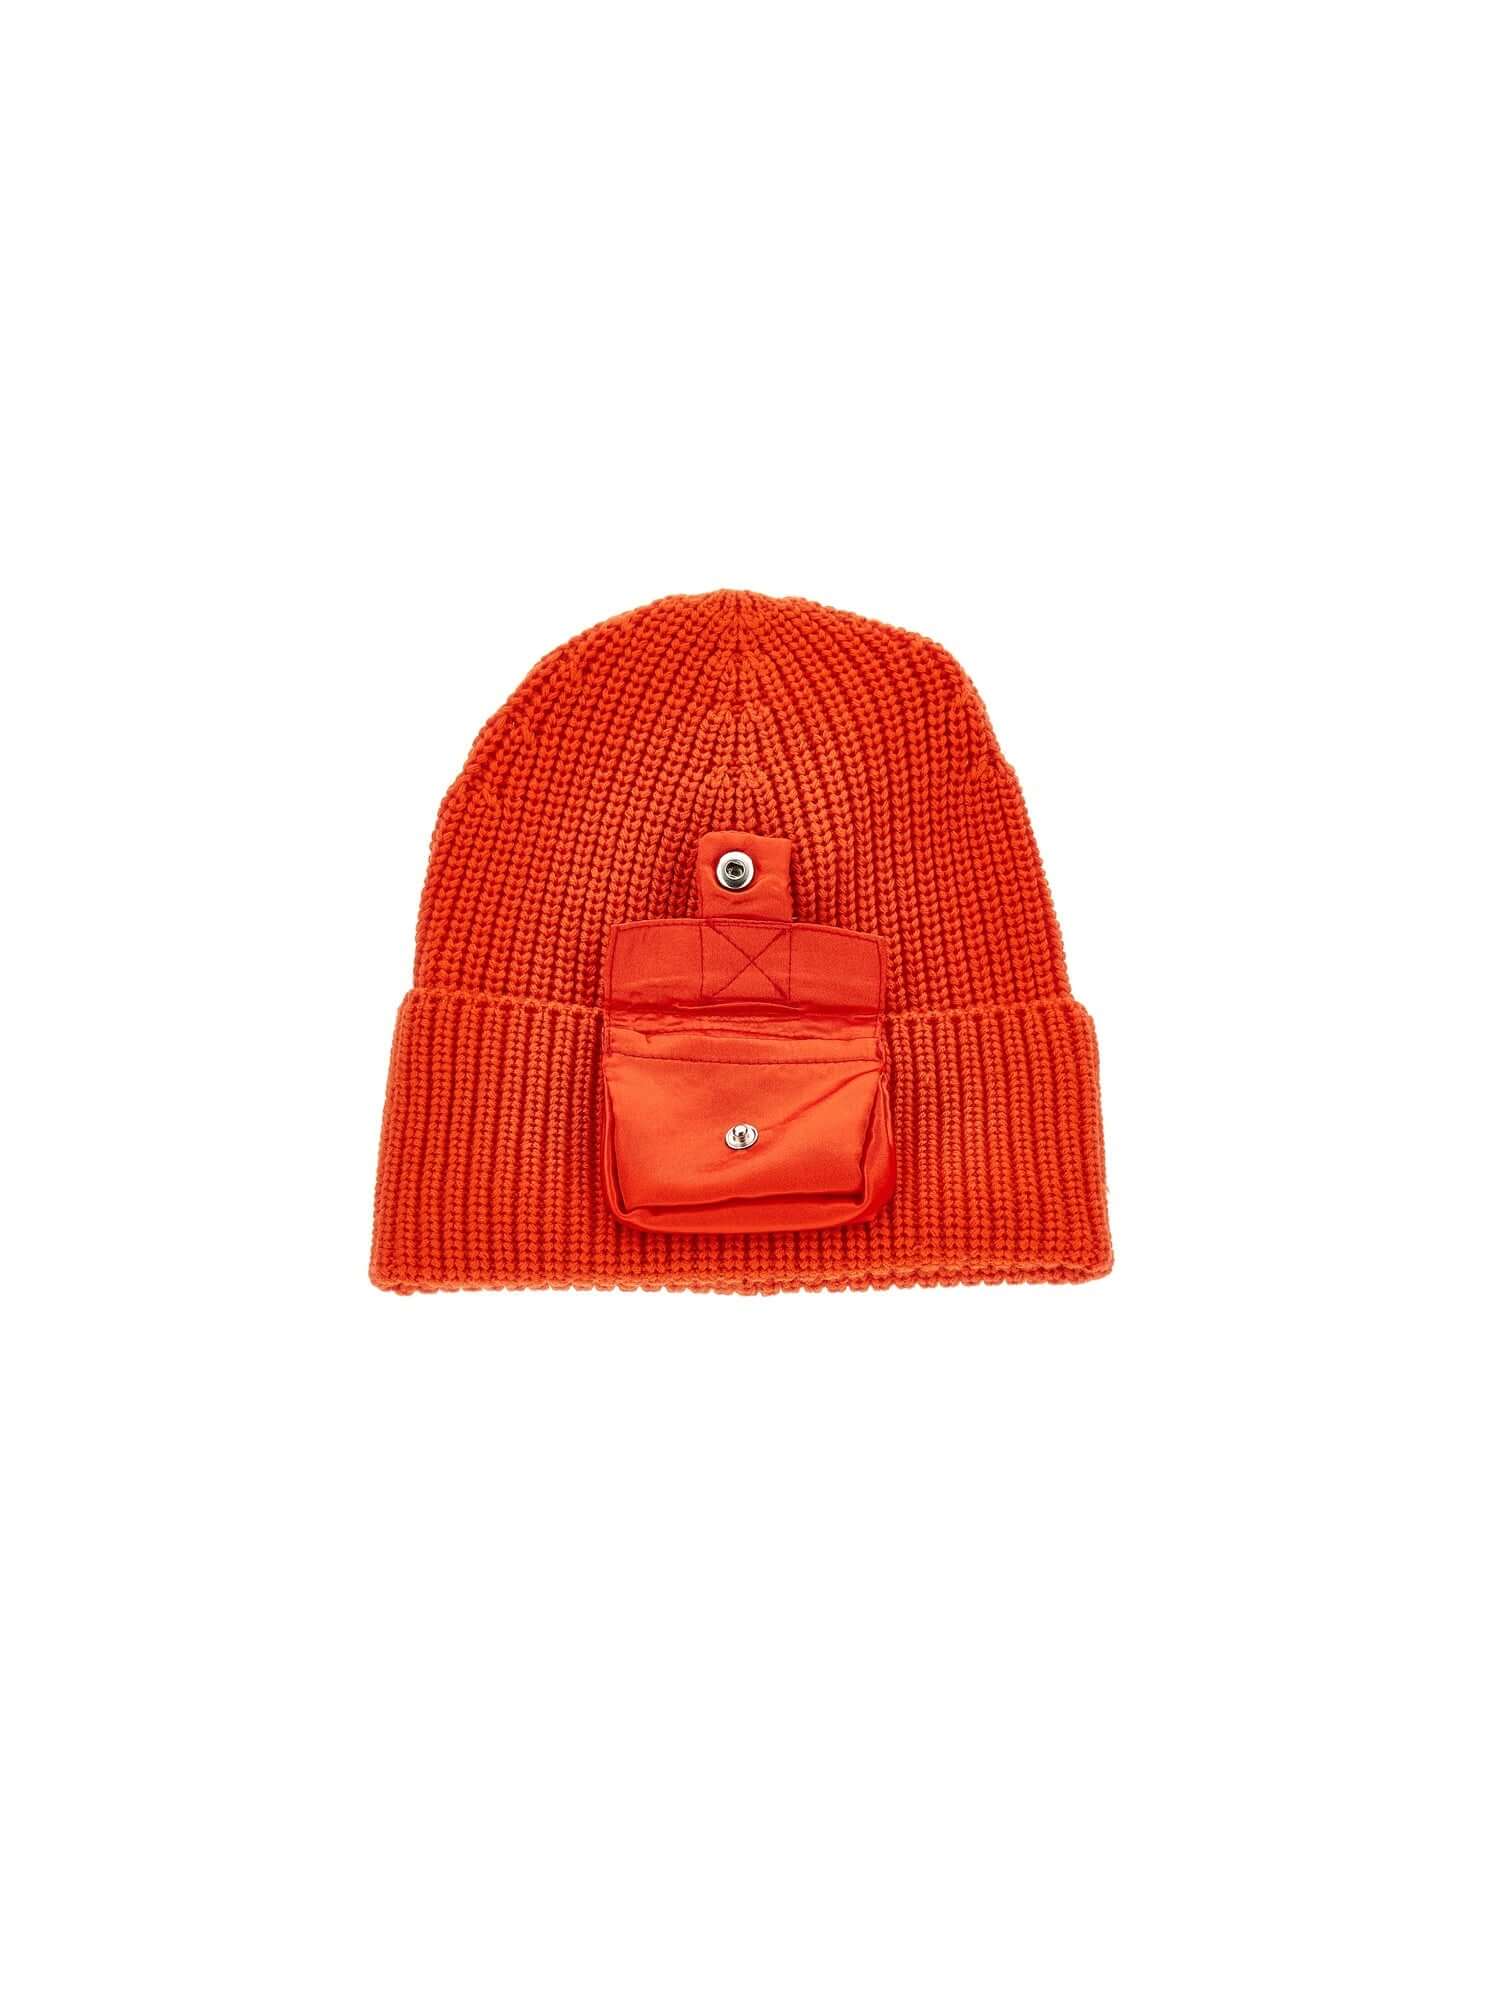 Monnalisa Girls Orange Hat